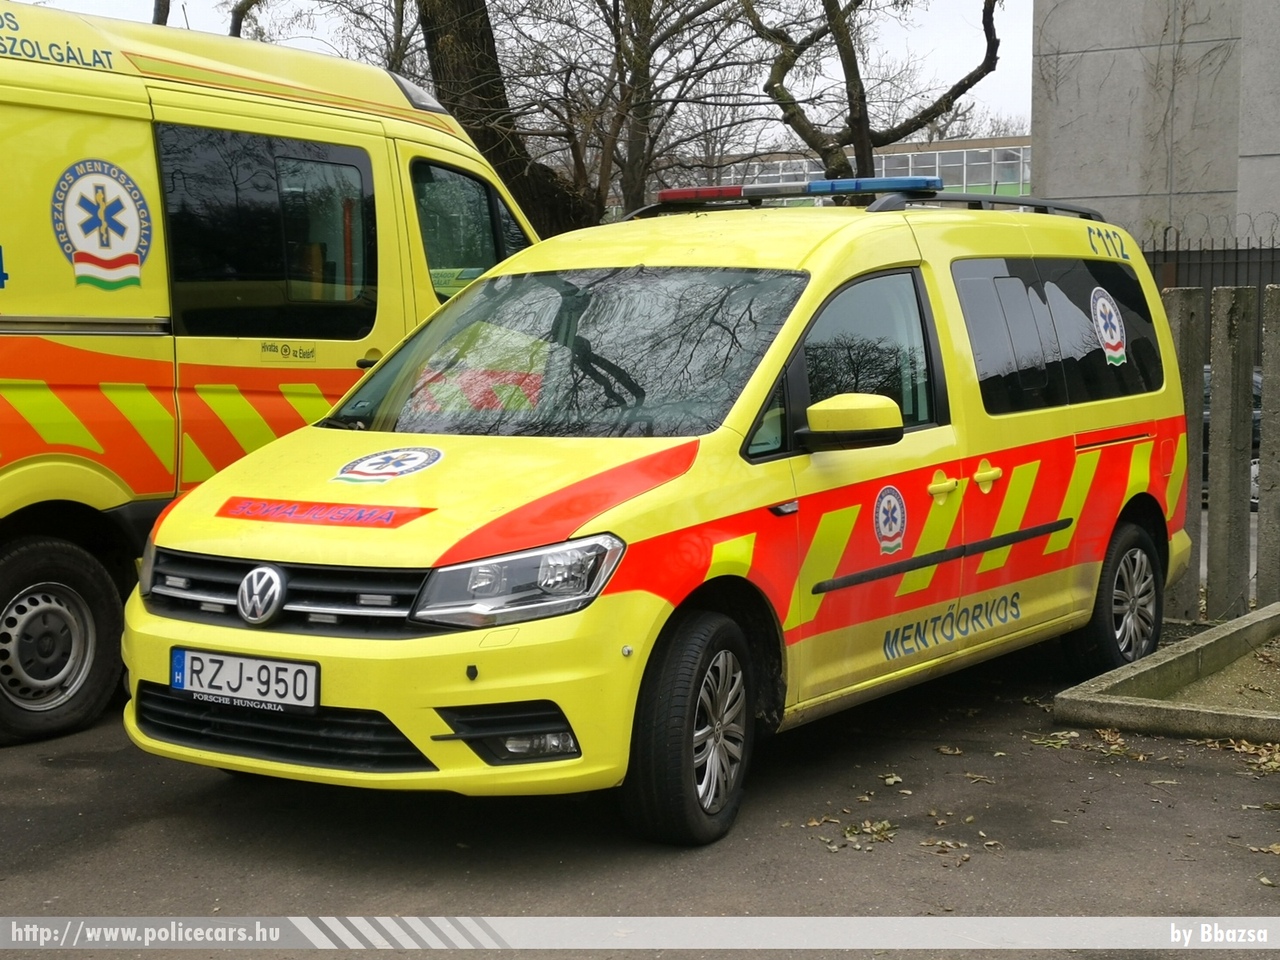 Volkswagen Caddy, MOK, Országos Mentõszolgálat, fotó: Bbazsa
Keywords: mentő magyar Magyarország mentőautó ambulance Hungary hungarian RZJ-950 OMSZ